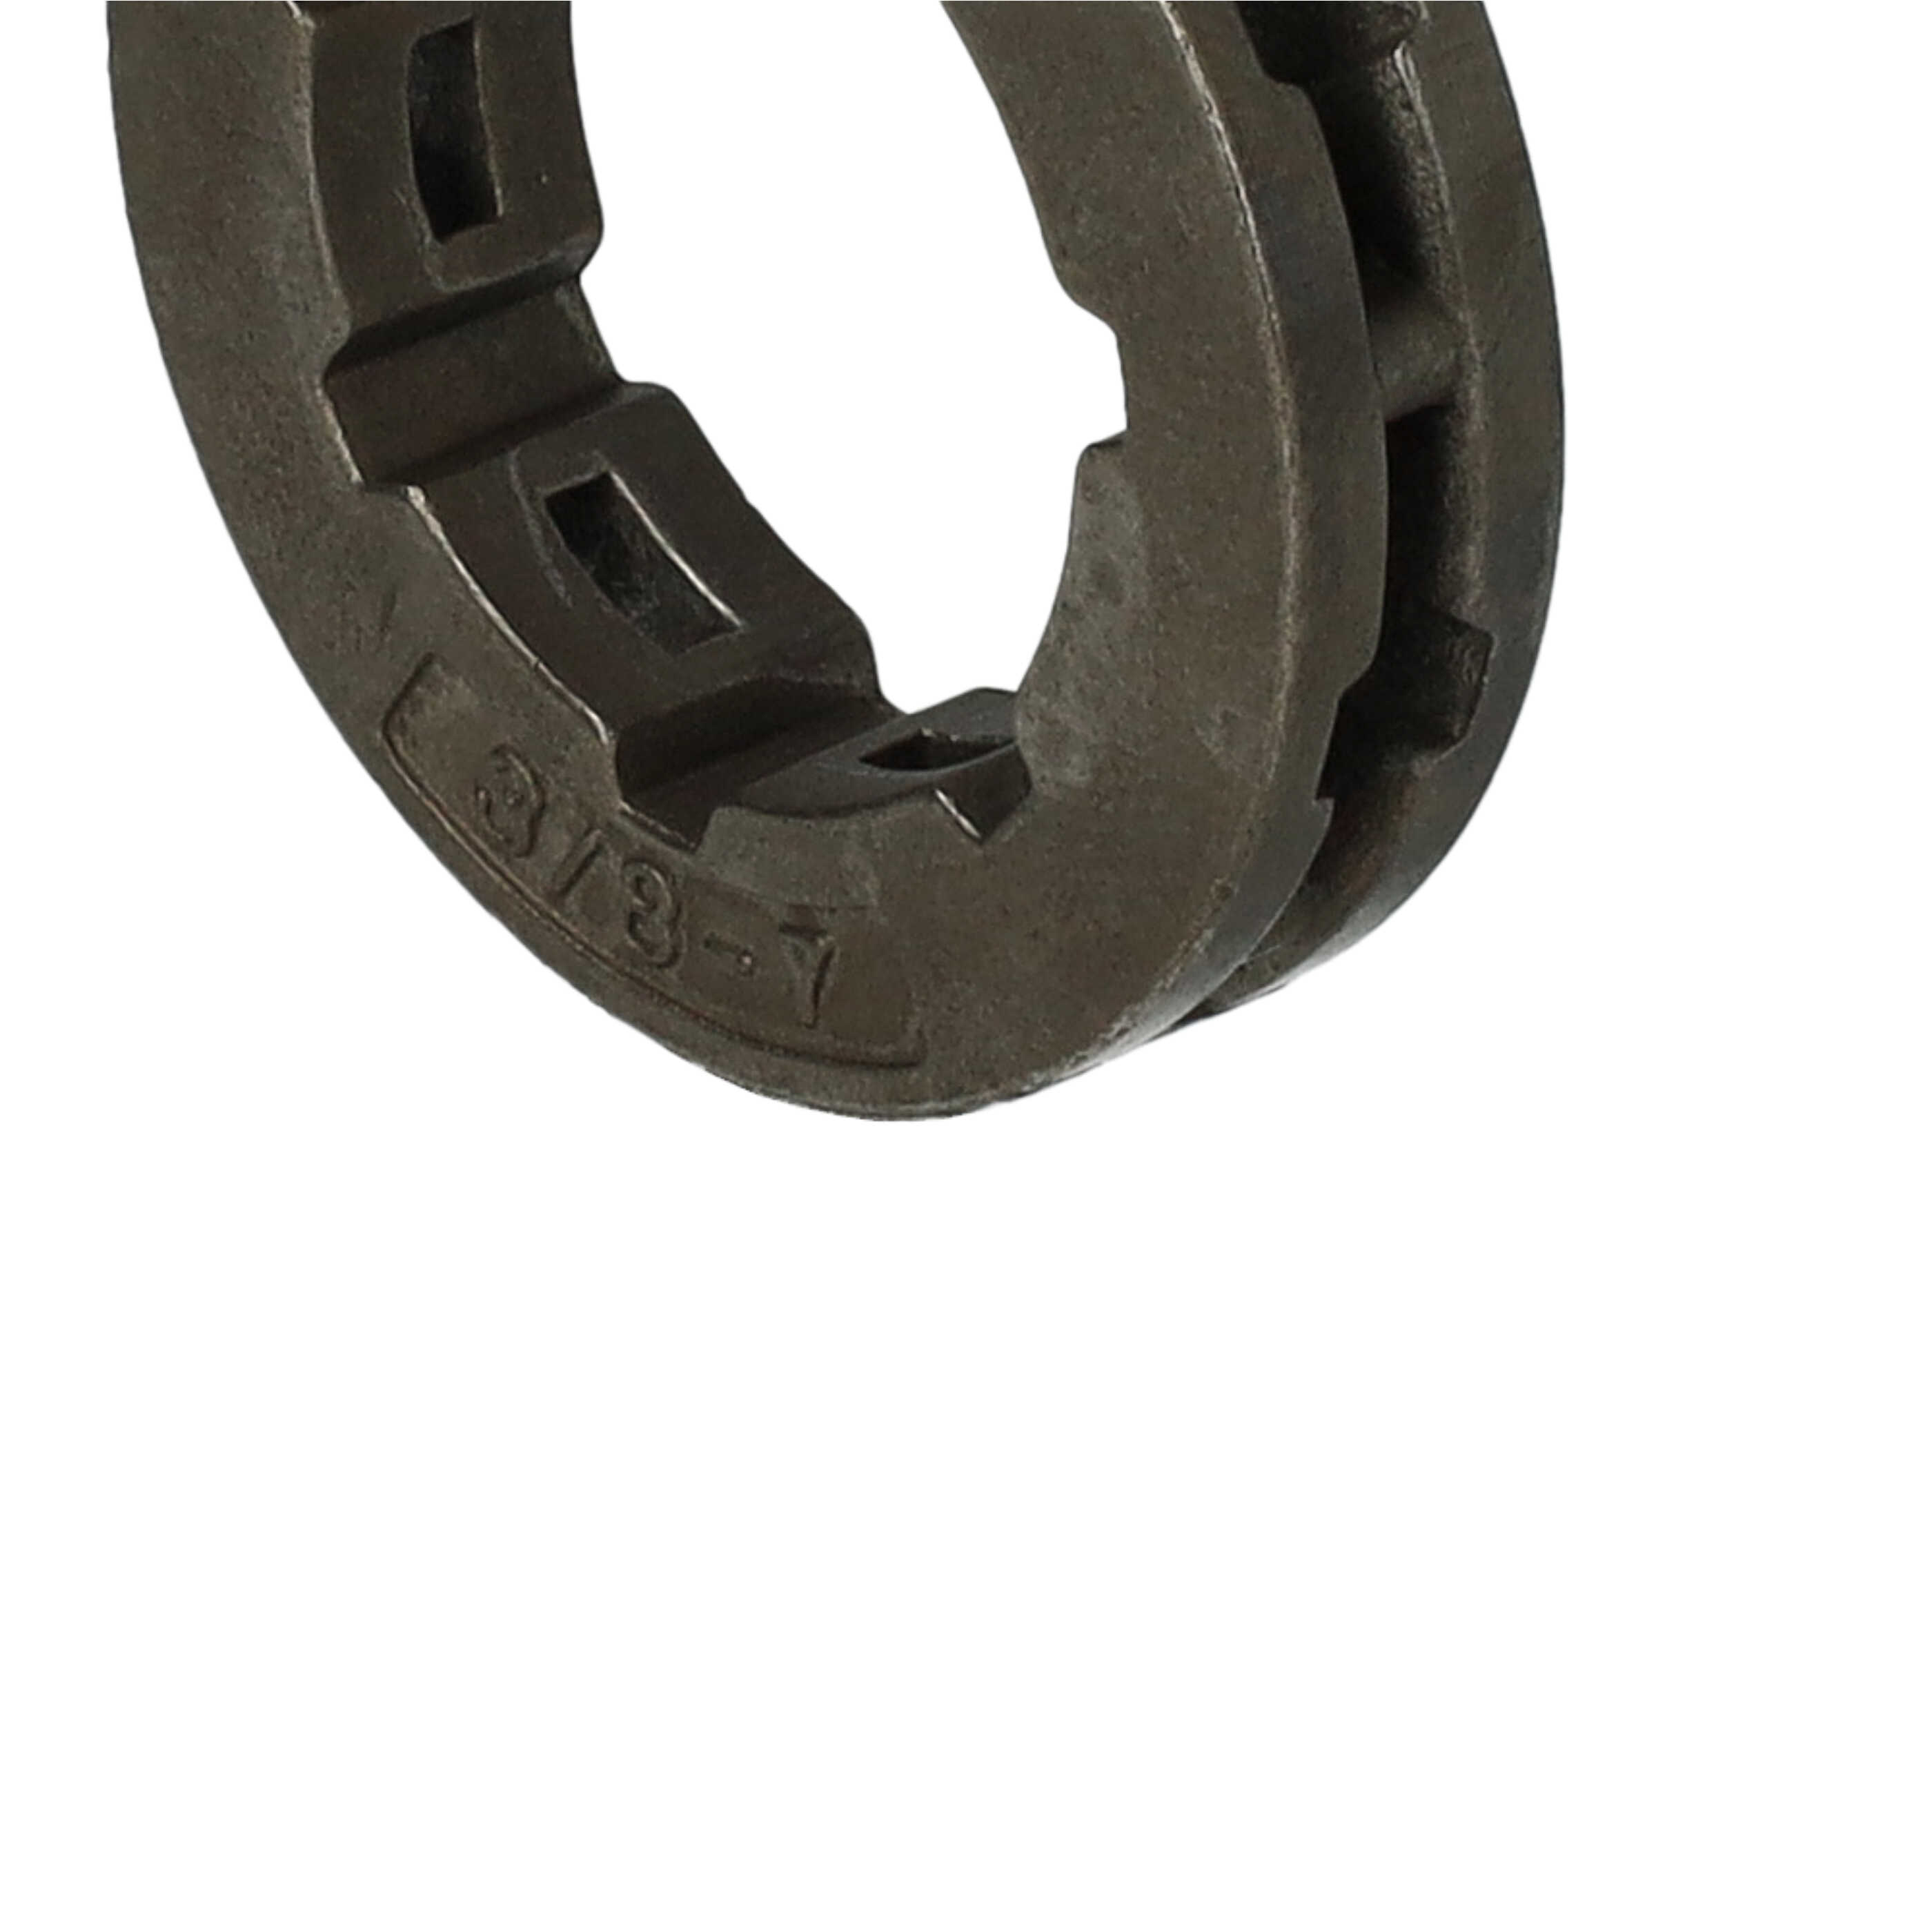 Pignone compatibile con Stihl MS 341 motosega ecc - pignone ad anello, pignone per catena 